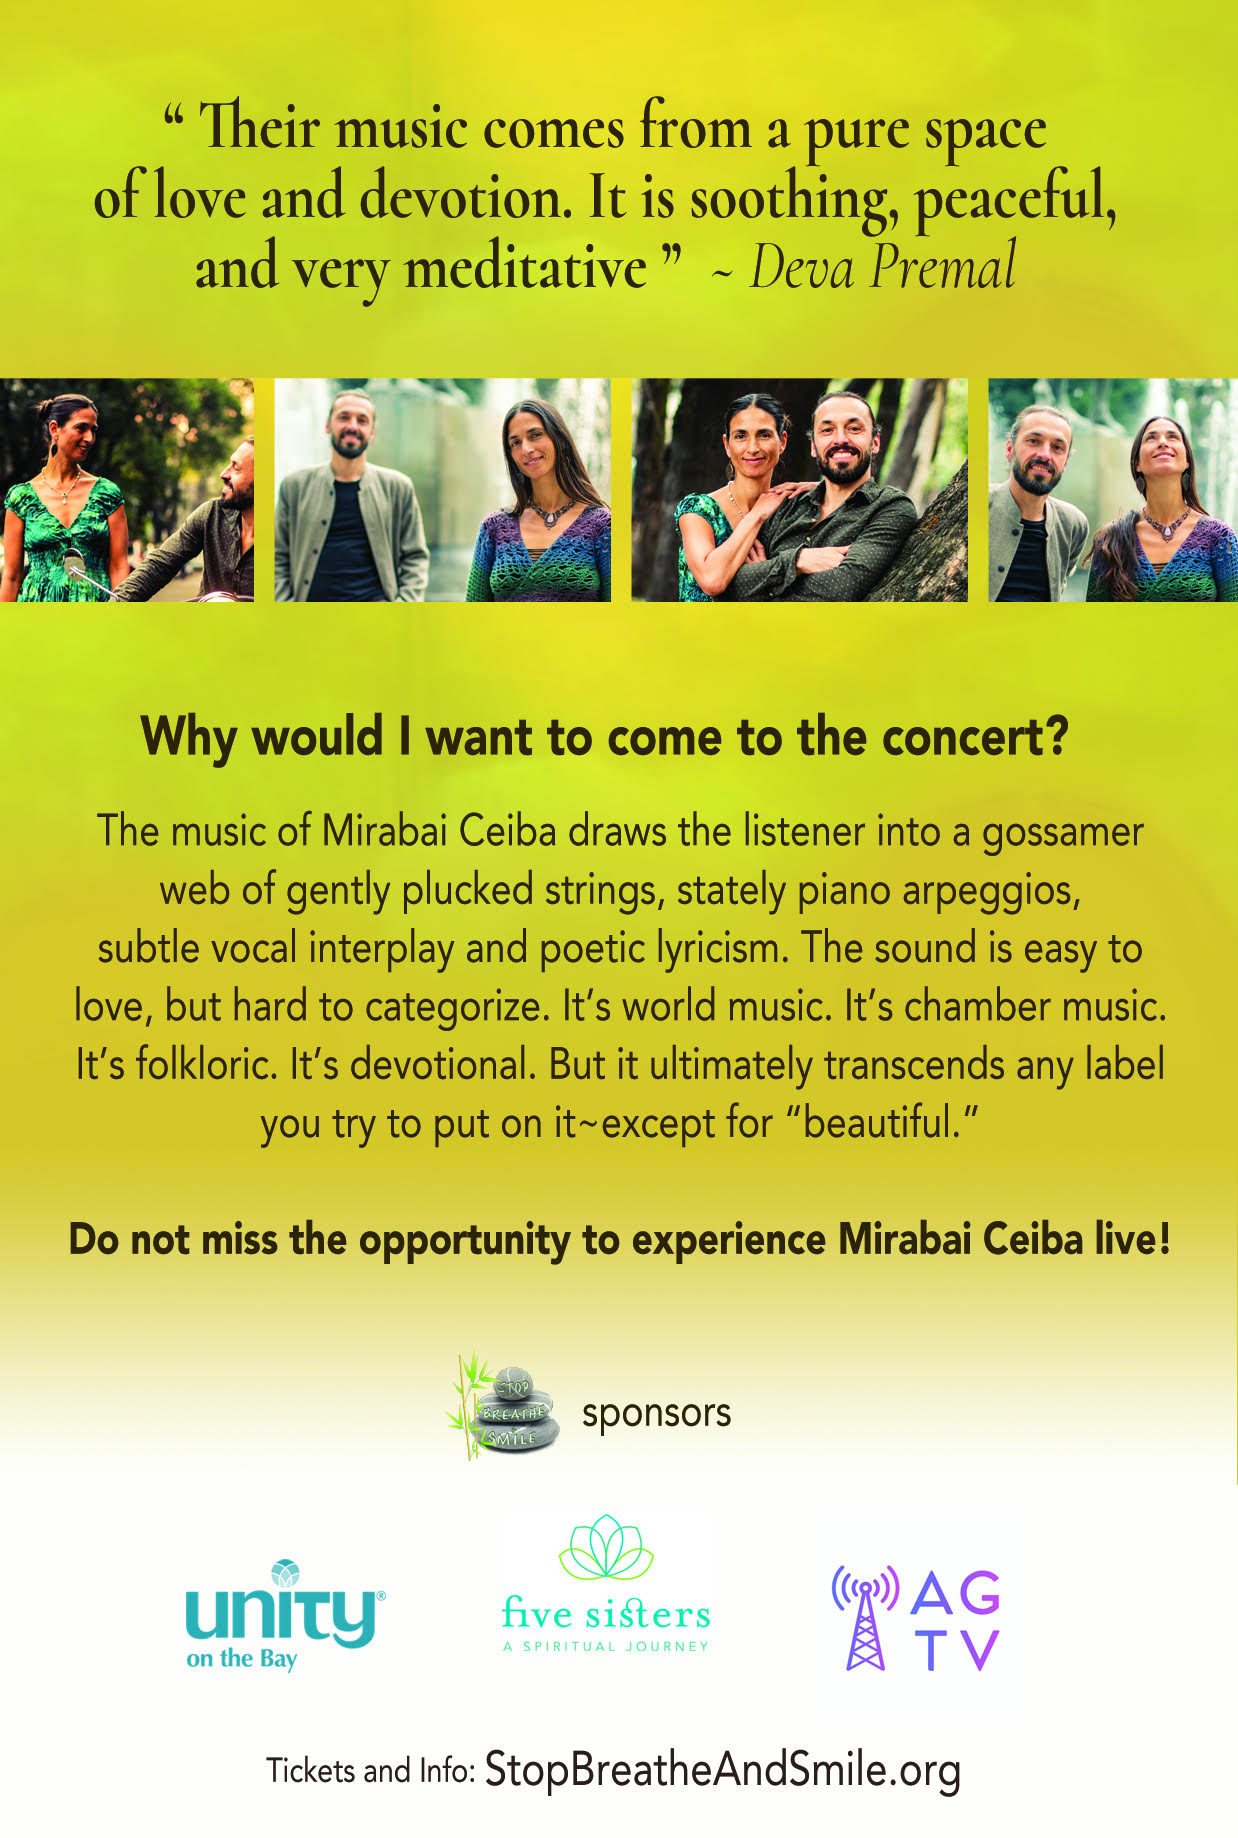 El dúo de música sanadora y consciente Mirabai Ceiba regresa a Miami el Jueves 5 de diciembre, en los jardines de Pinecrest. Será una noche mística y mágica Boletos http://bit.ly/mirabaiceibainconcert